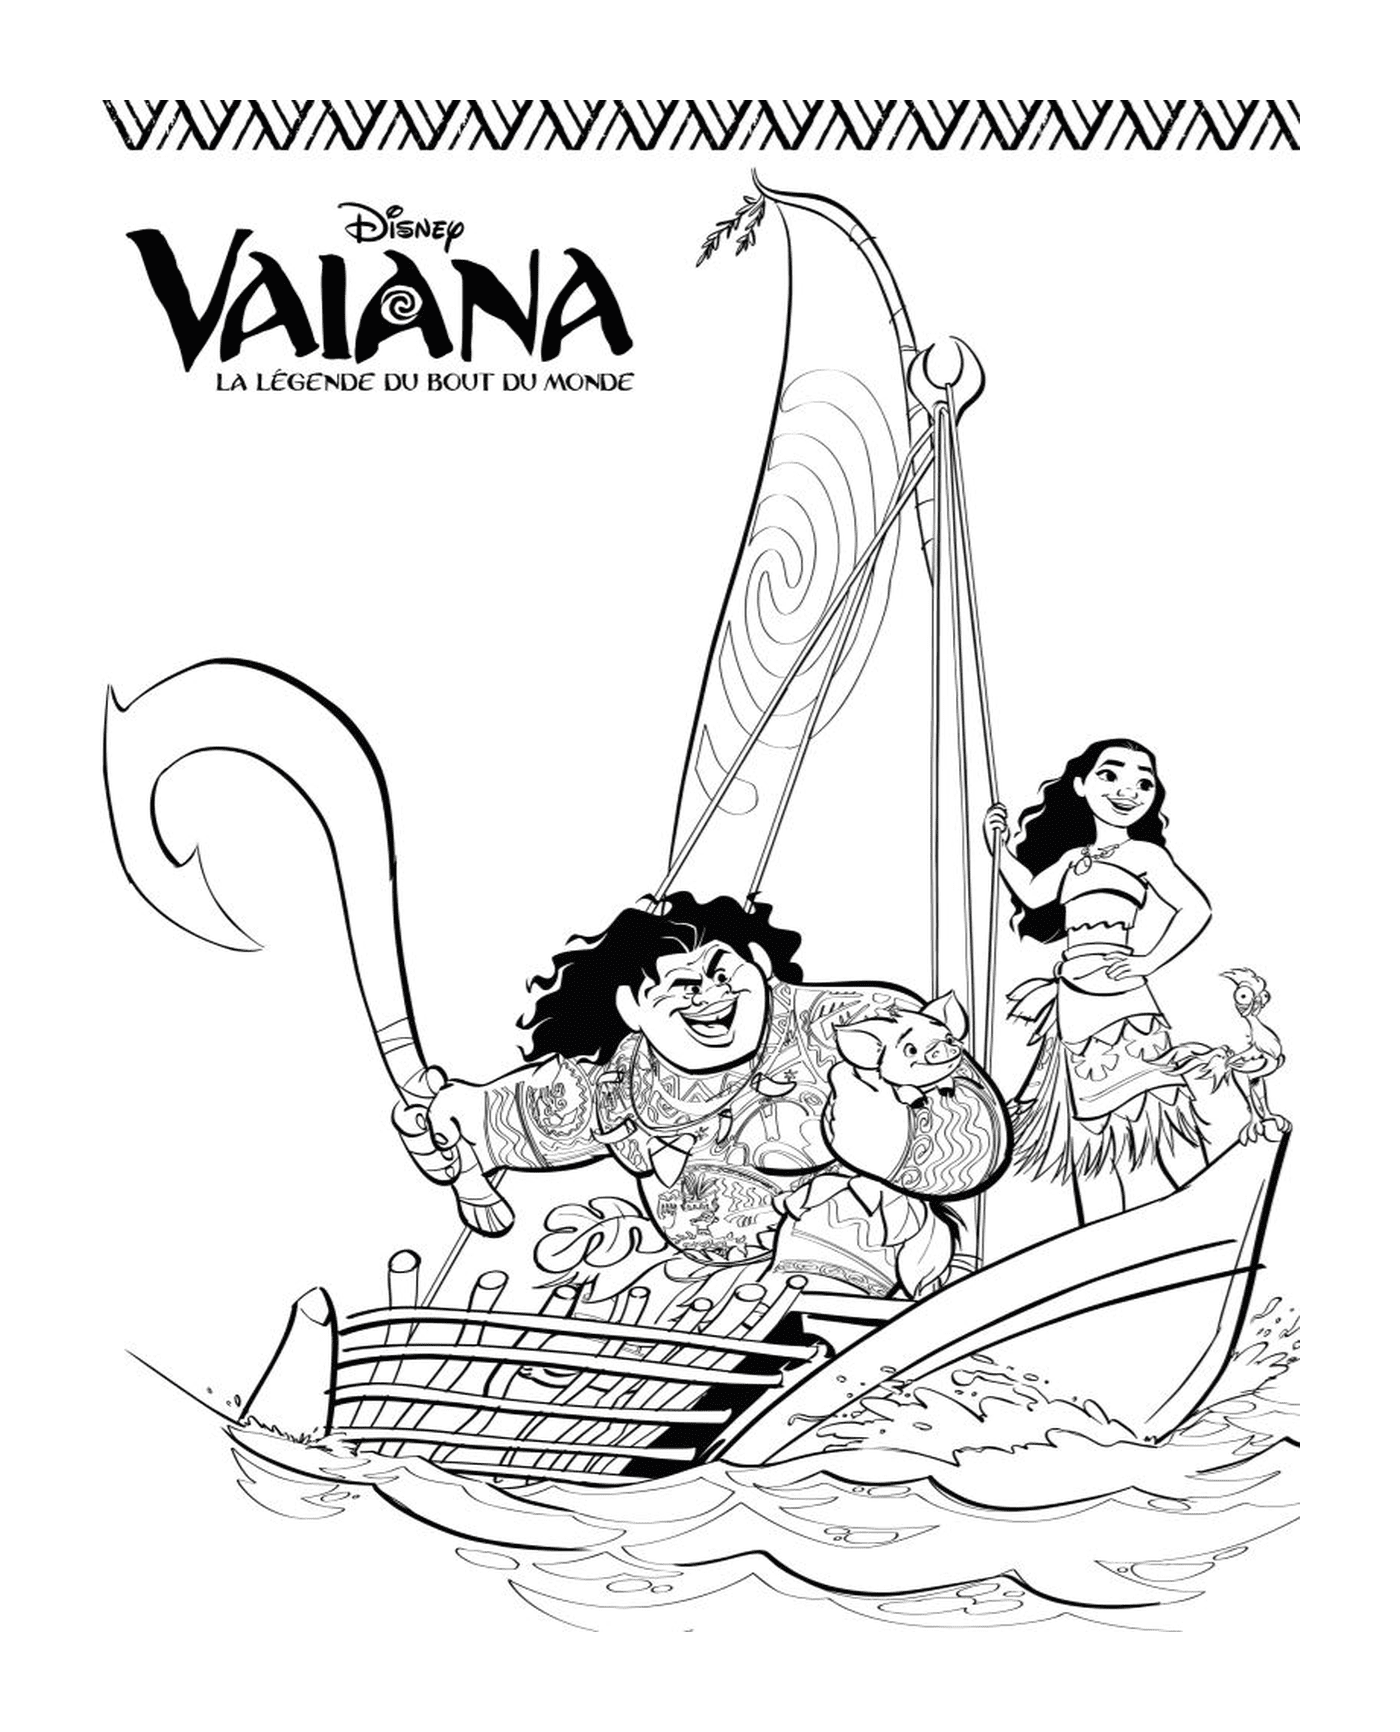  Vaiana y Maui en un velero 